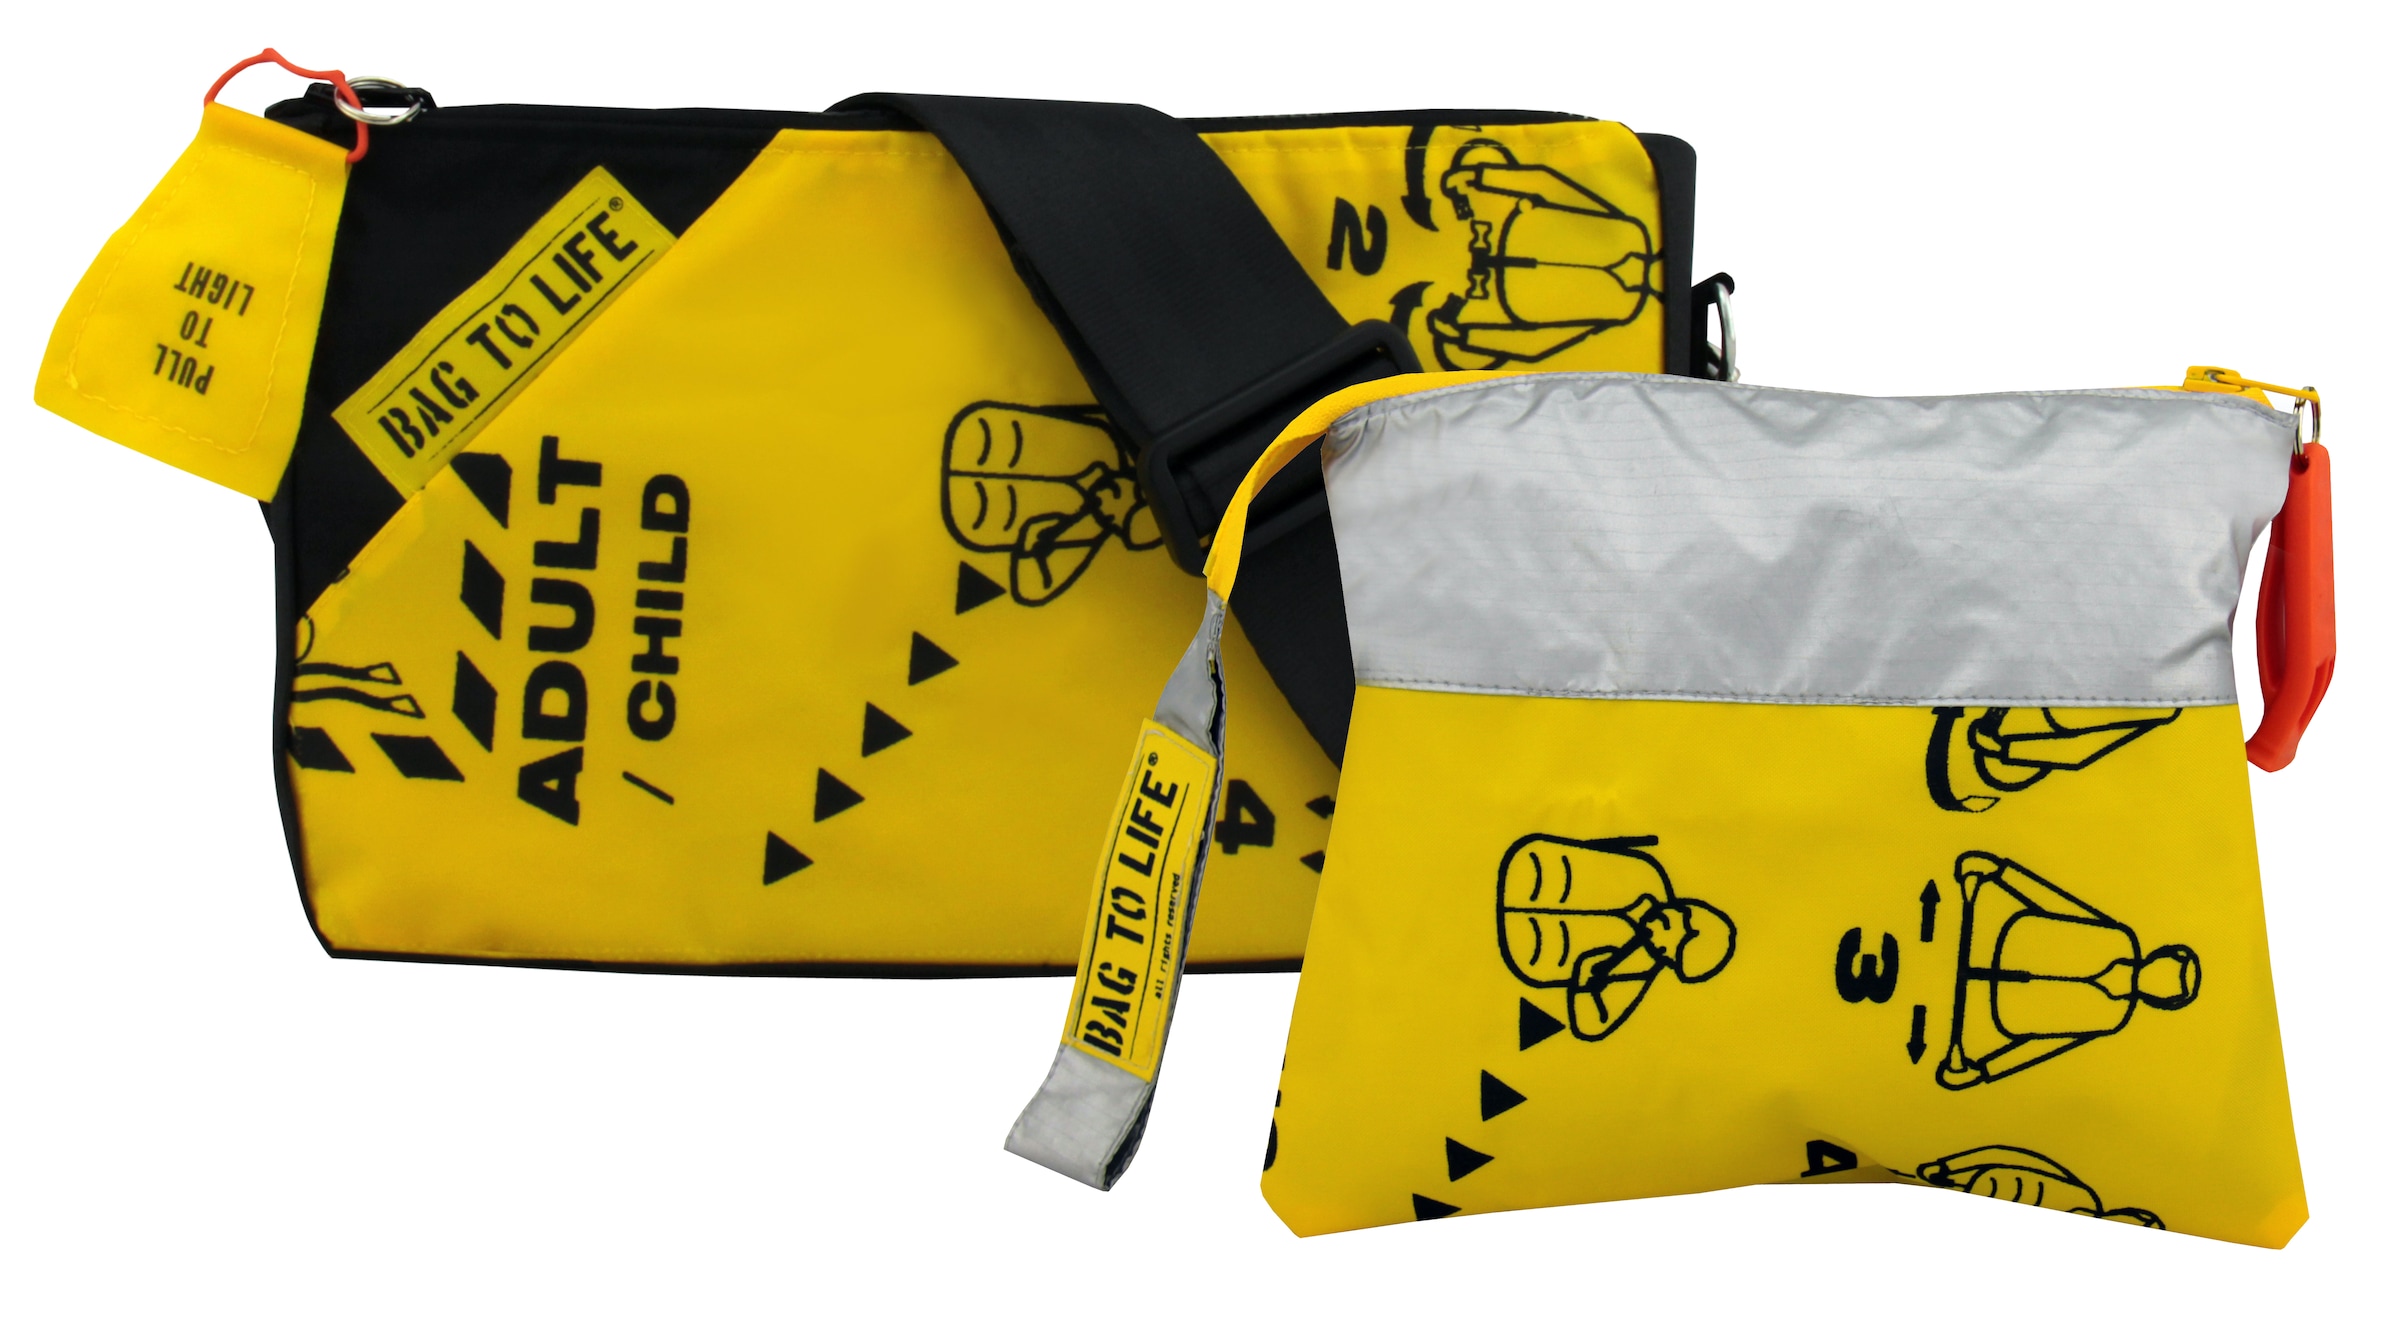 Bag to Life Rücksitzorganizer »ADAC Organizer für Rücksitz im Auto/Camper«,  als Tasche faltbar